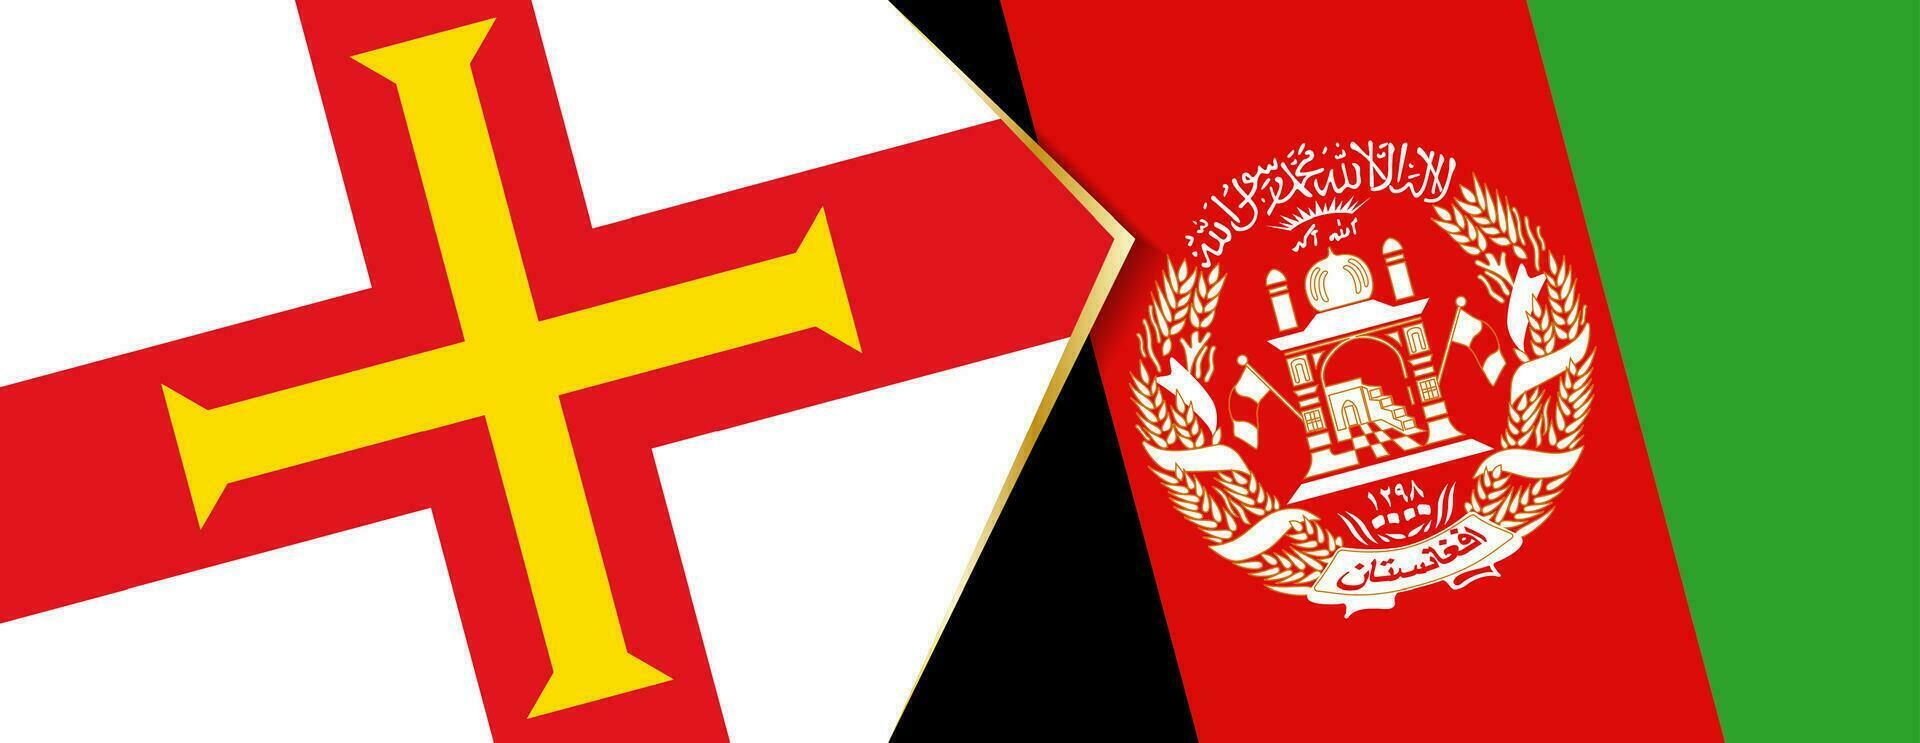 maglione e afghanistan bandiere, Due vettore bandiere.